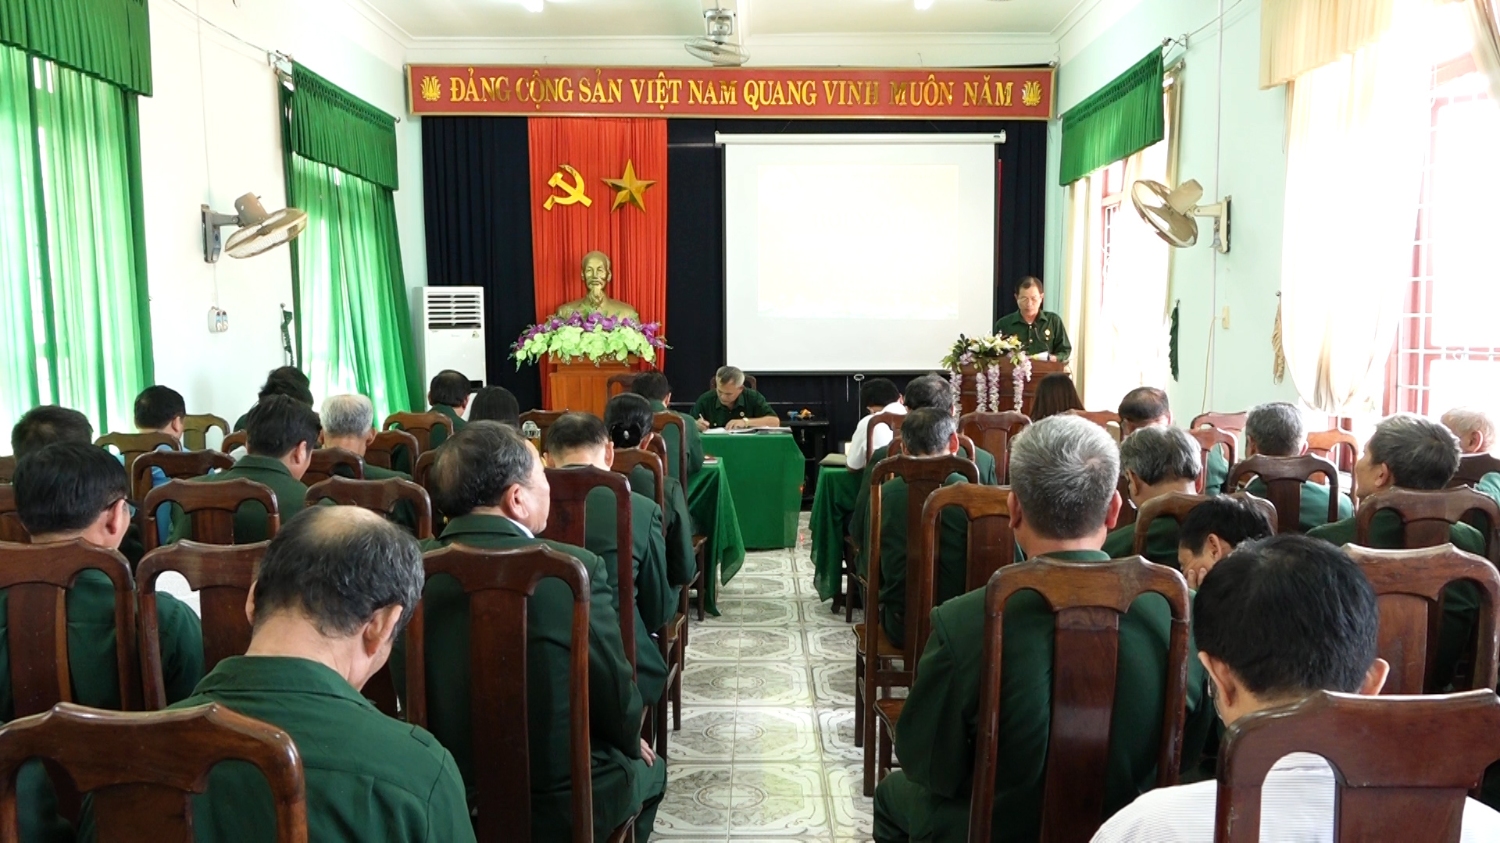 Hội Cựu chiến binh thị xã Ba Đồn tổng kết công tác hội năm 2019, triển khai nhiệm vụ năm 2020.